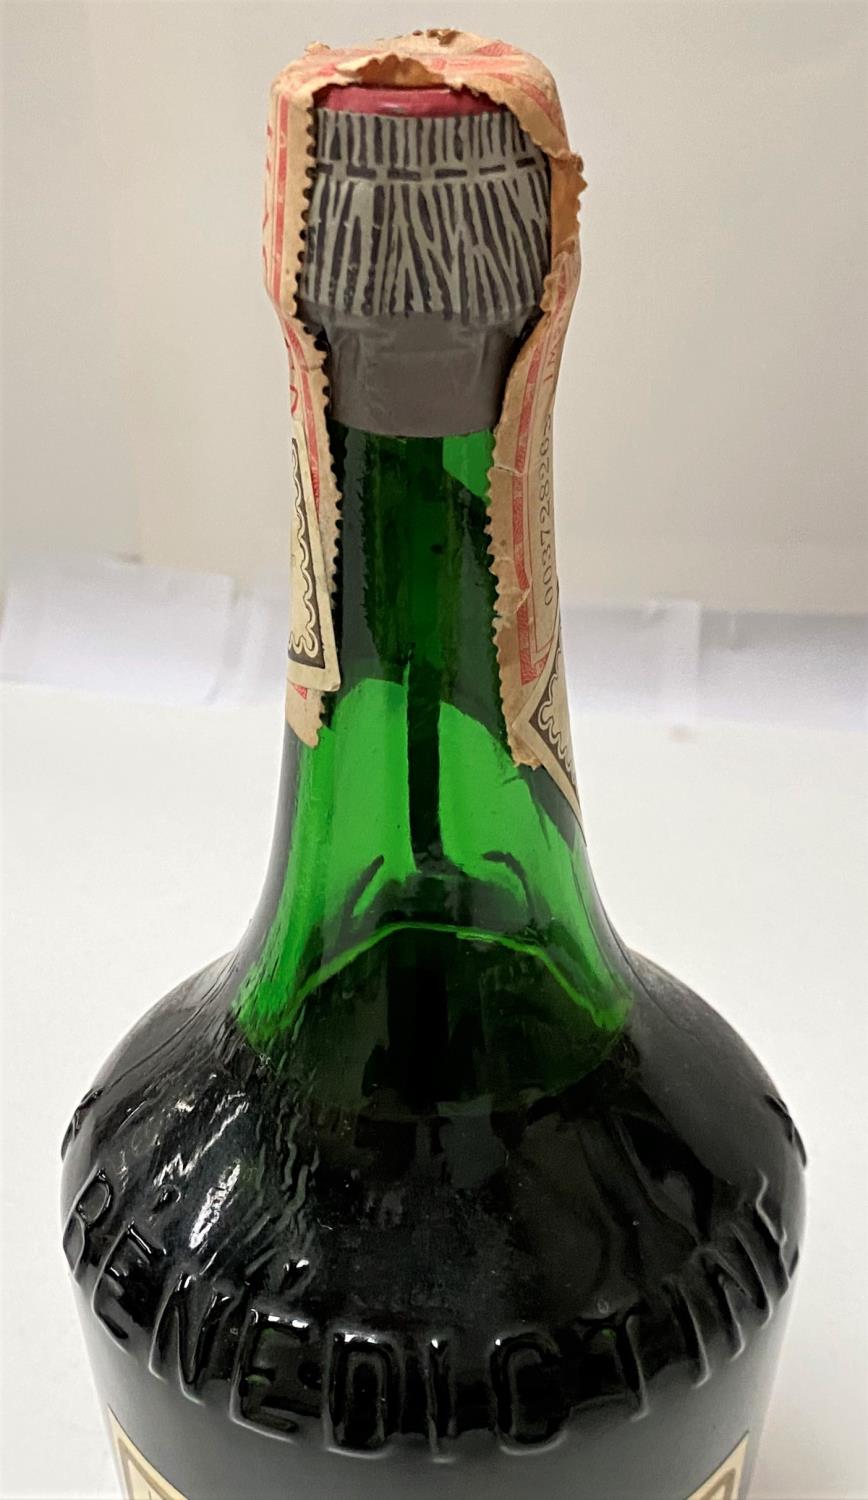 A bottle of 1991 Domaine Au Late Cotes De Gascoigne and other miniature liqueurs etc - Image 3 of 3